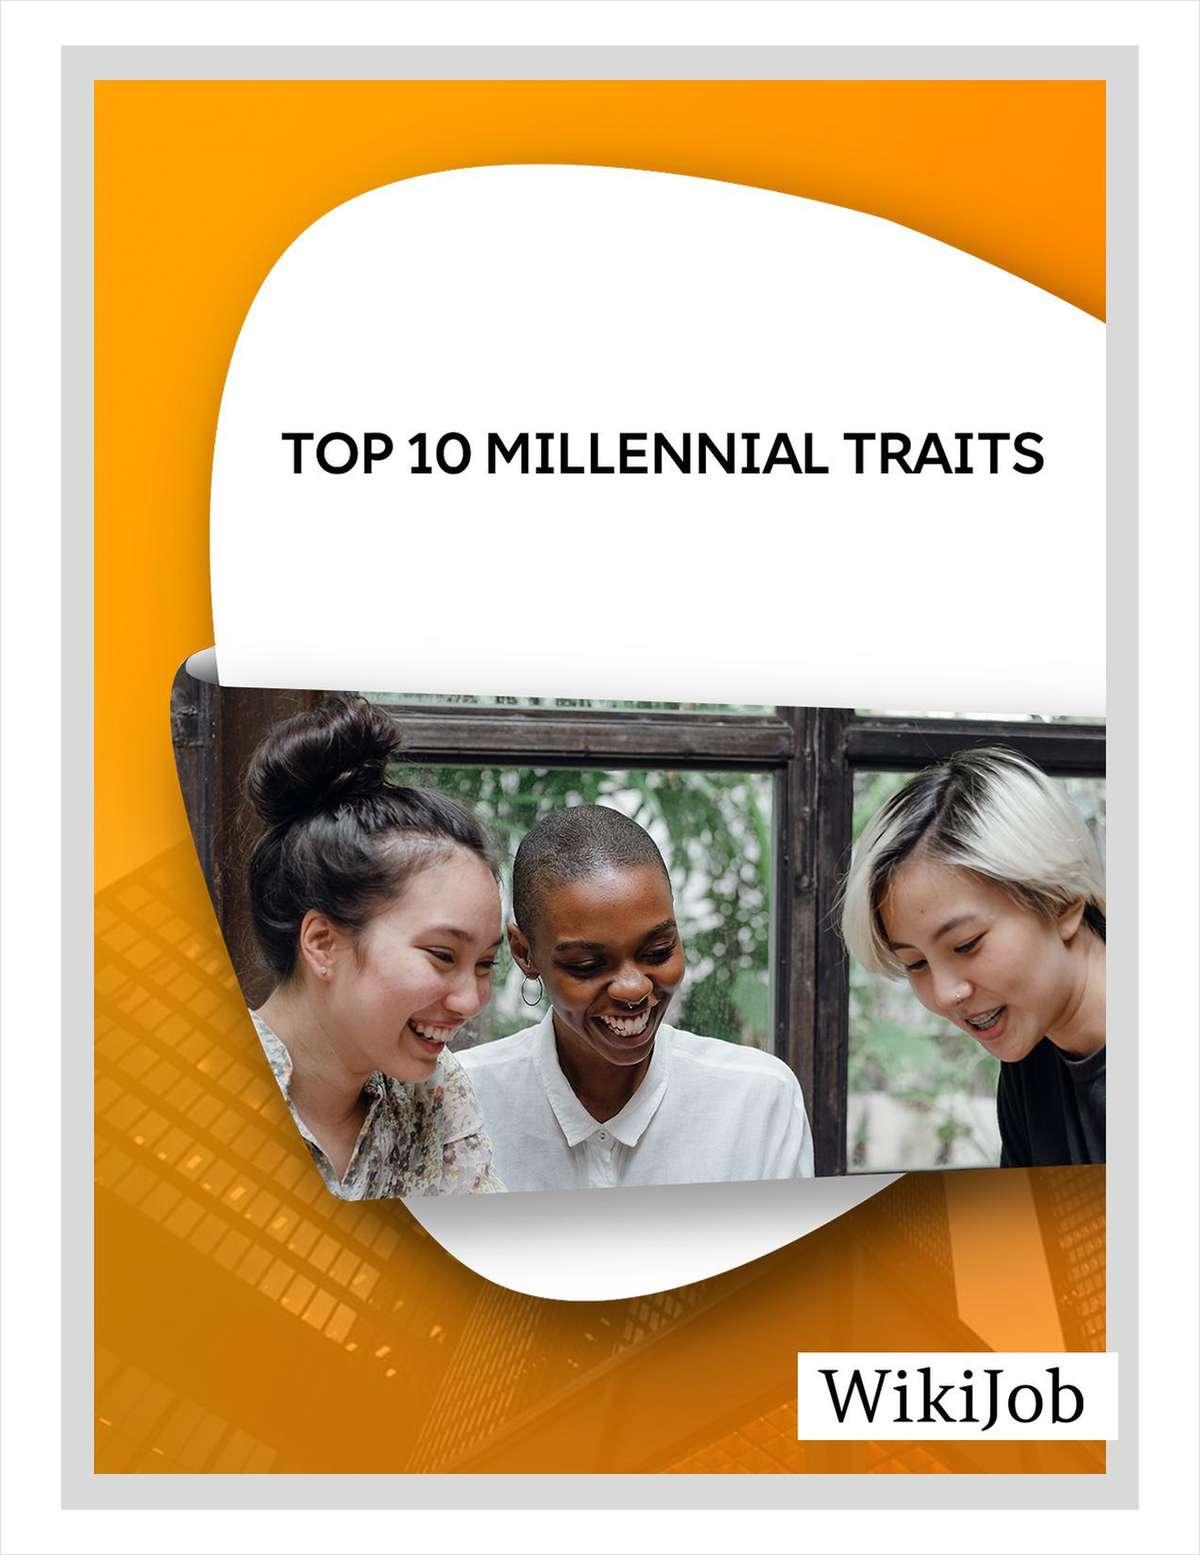 Top 10 Millennial Traits